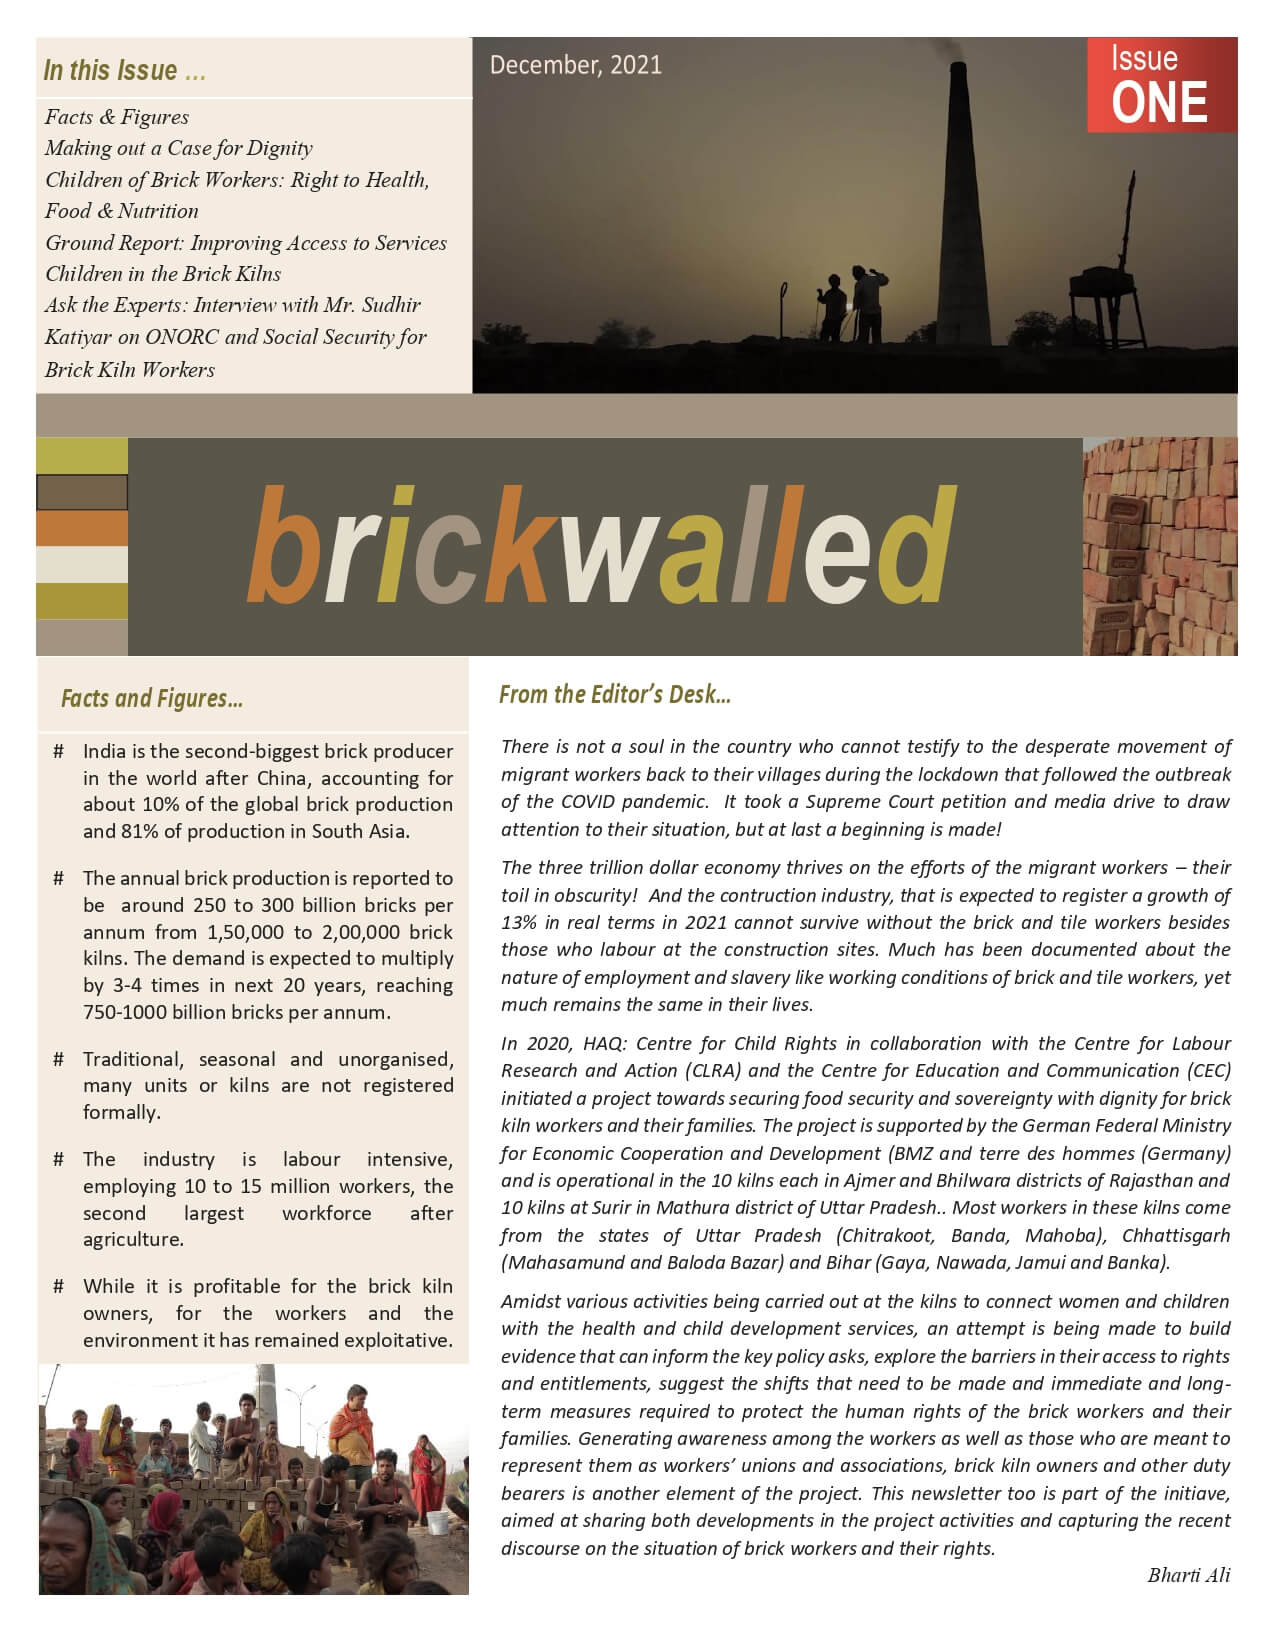 Brickwalled Newsletter Issue 1 – December 2021